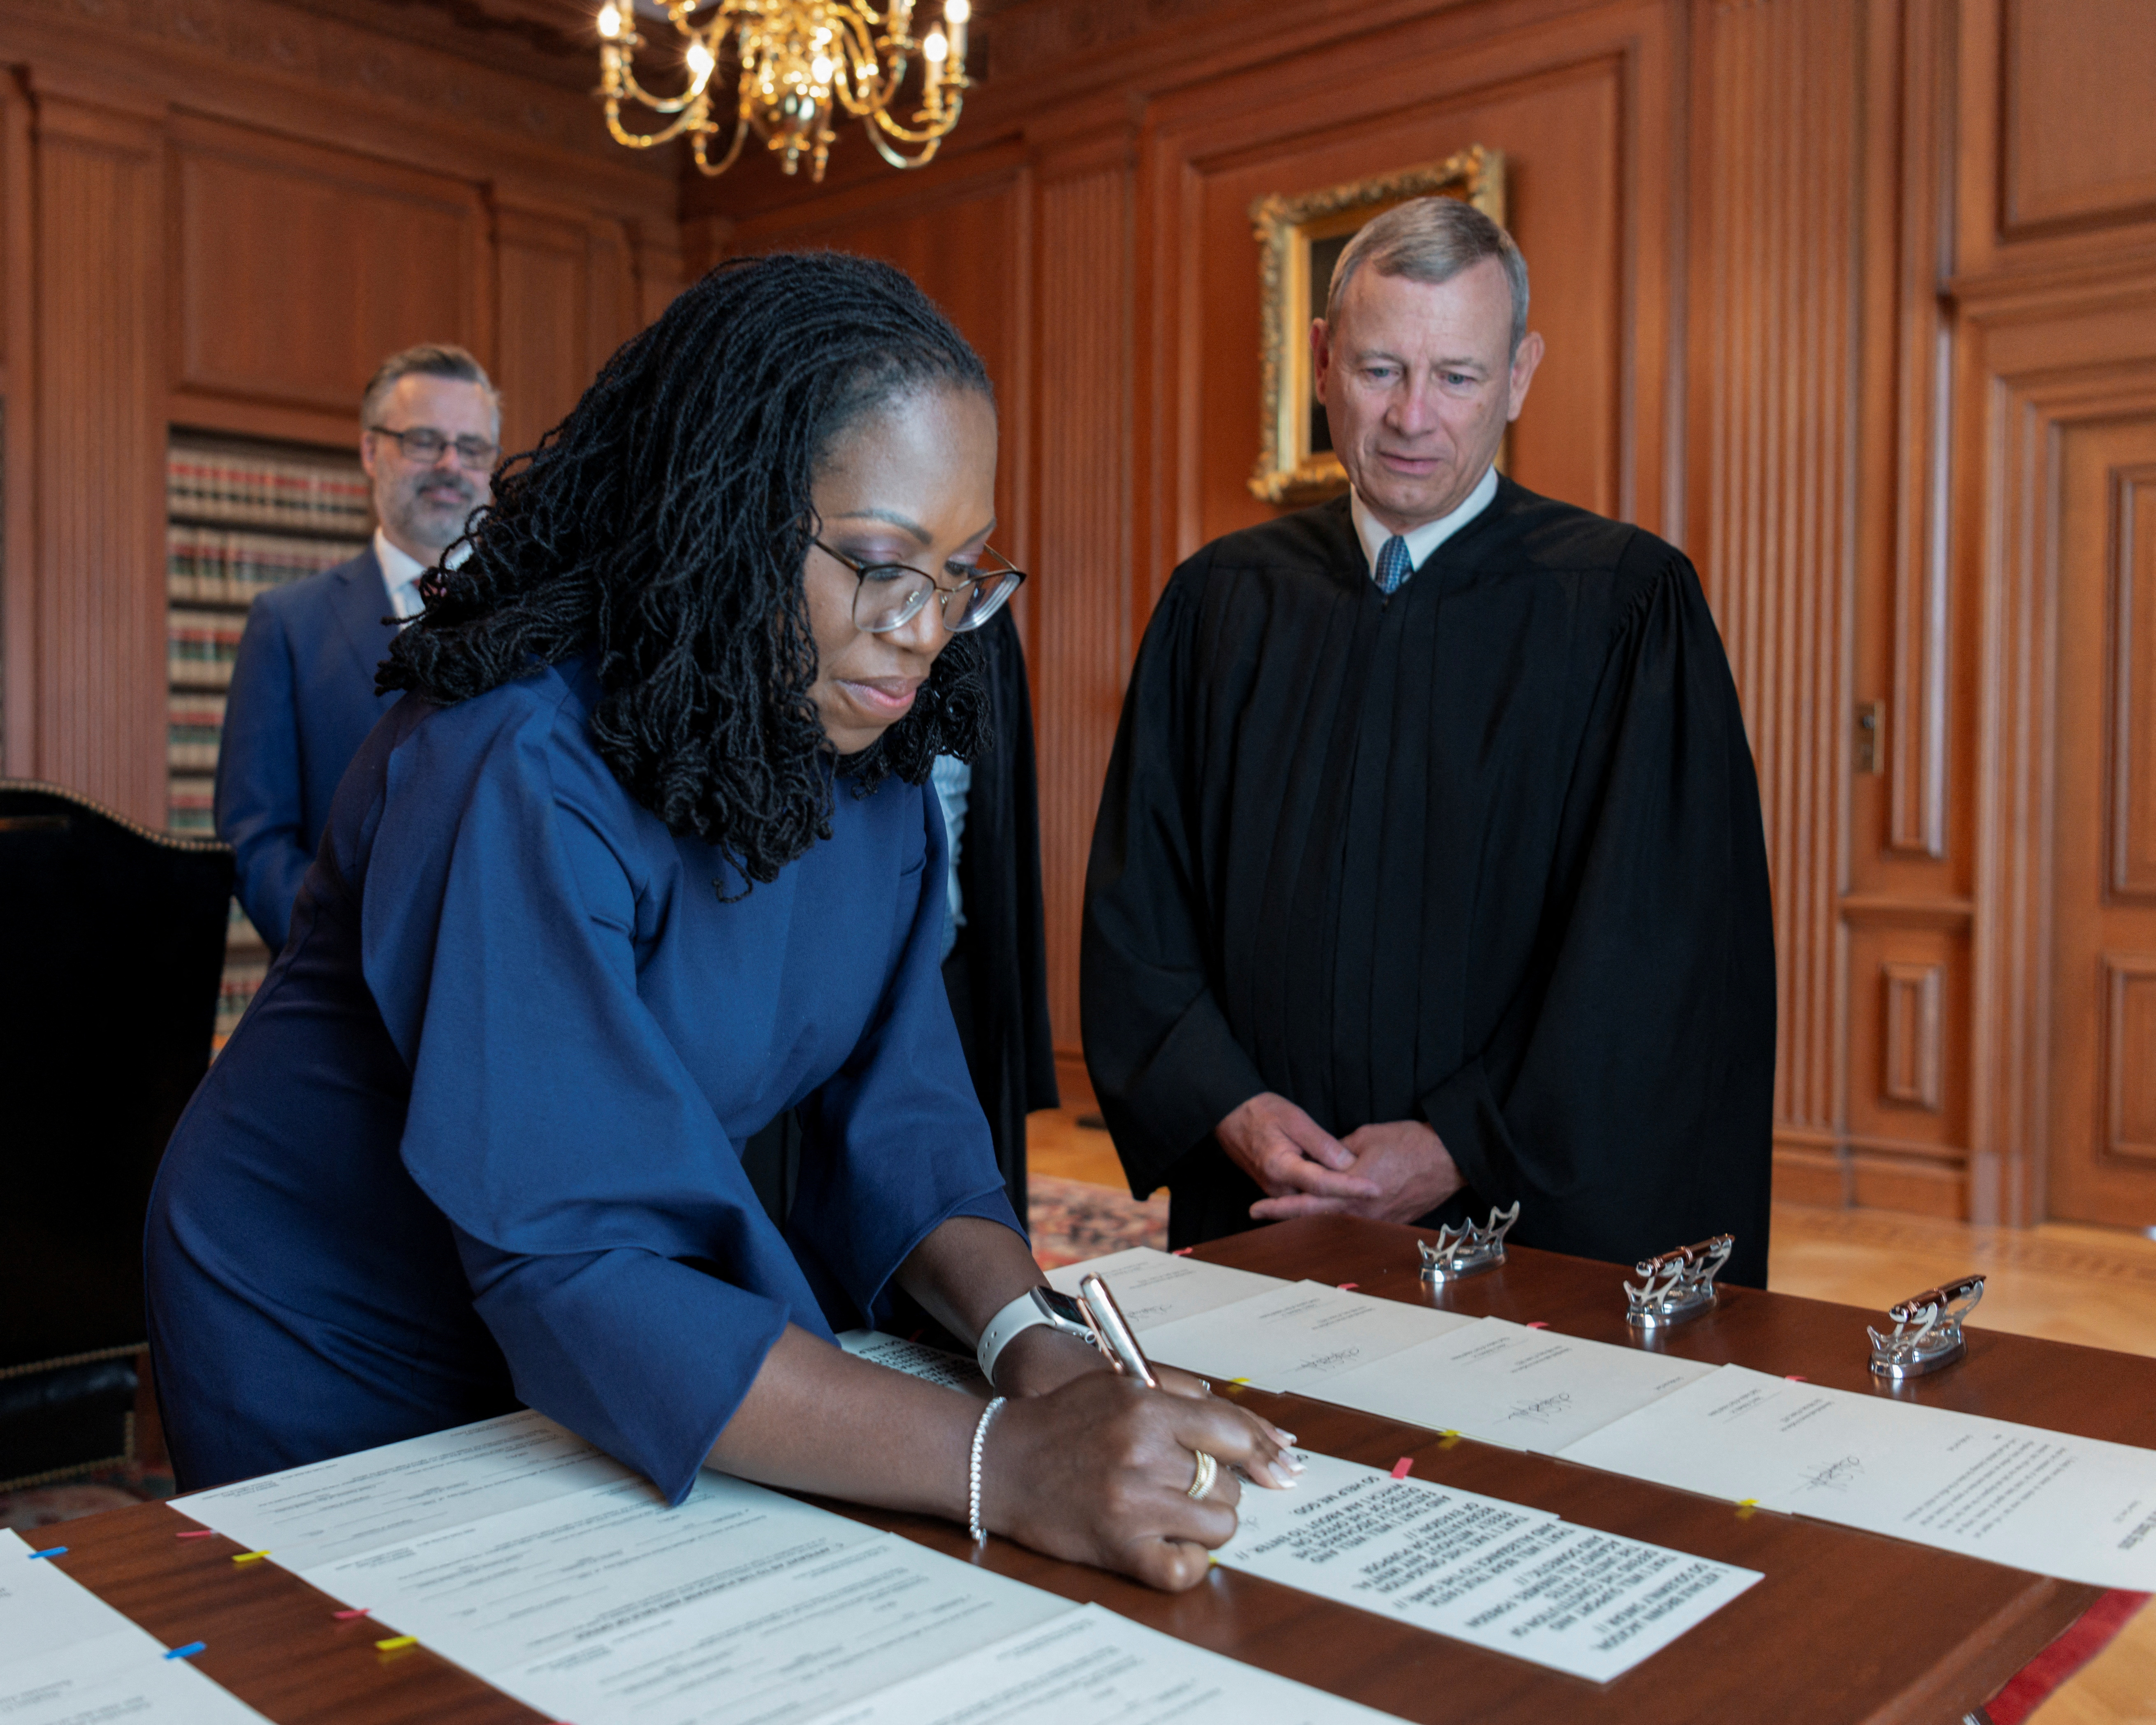 Ketanji Brown Jackson firmando como nueva miembro de la Corte Suprema de EEUU (Fred Schilling/Collection of the Supreme Court of the United States/Handout via Reuters)